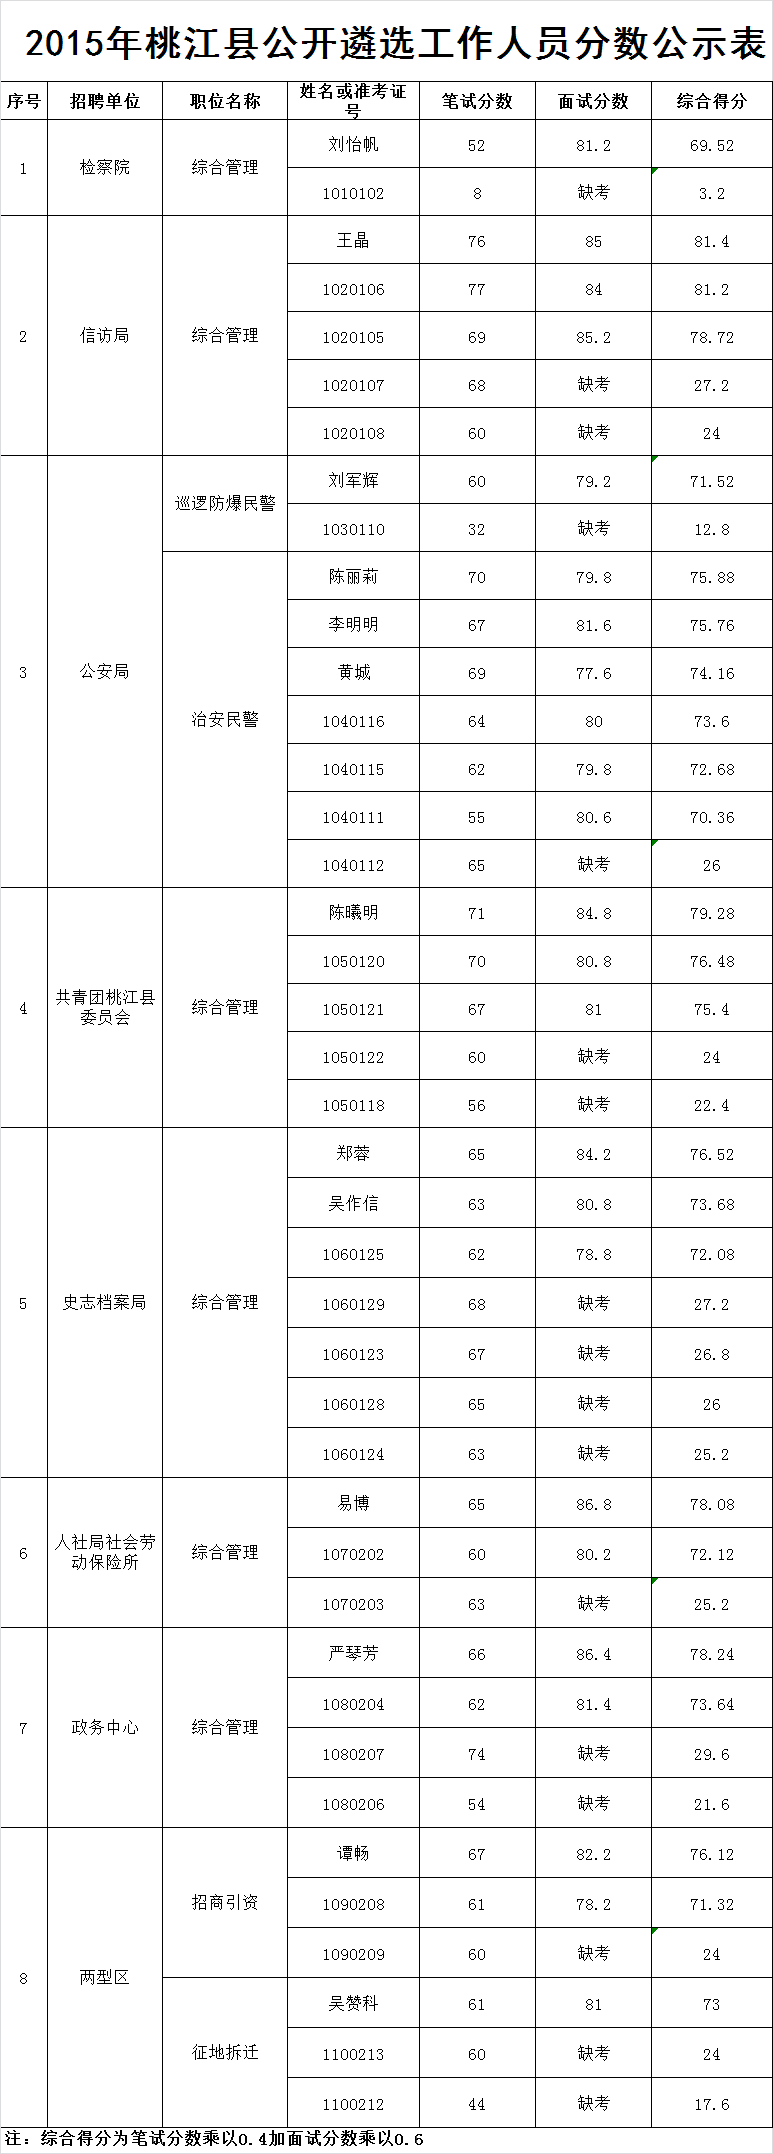 2015年桃江县公开遴选工作人员分数公示表.png